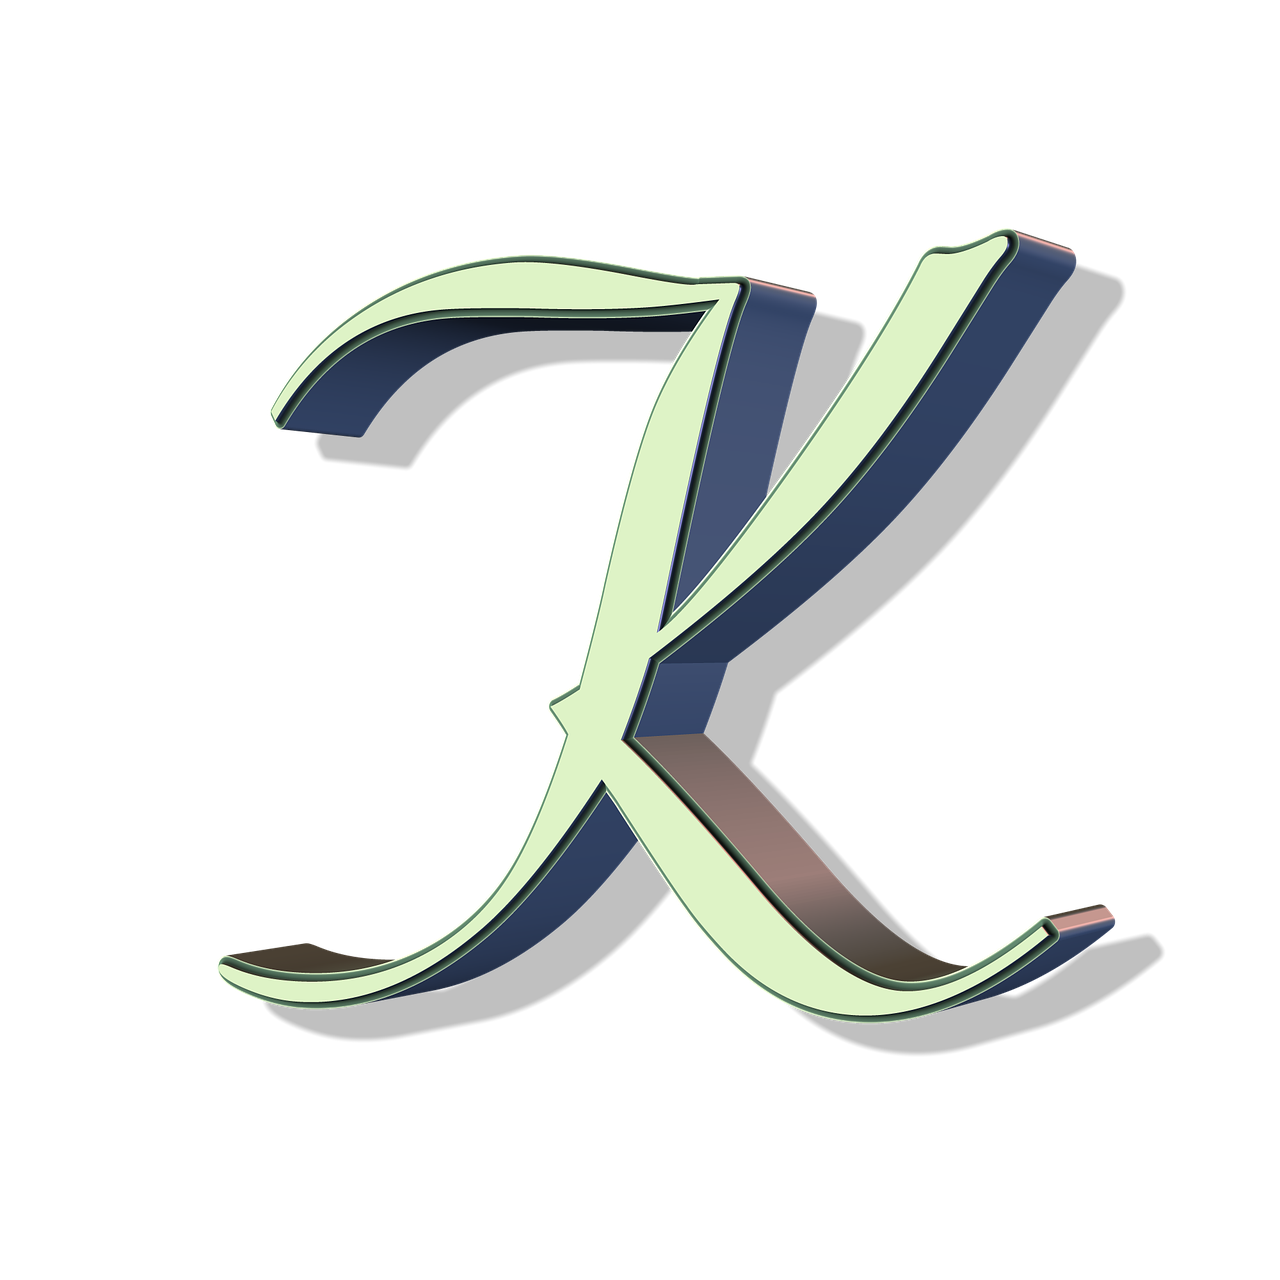 alphabet letter font free photo